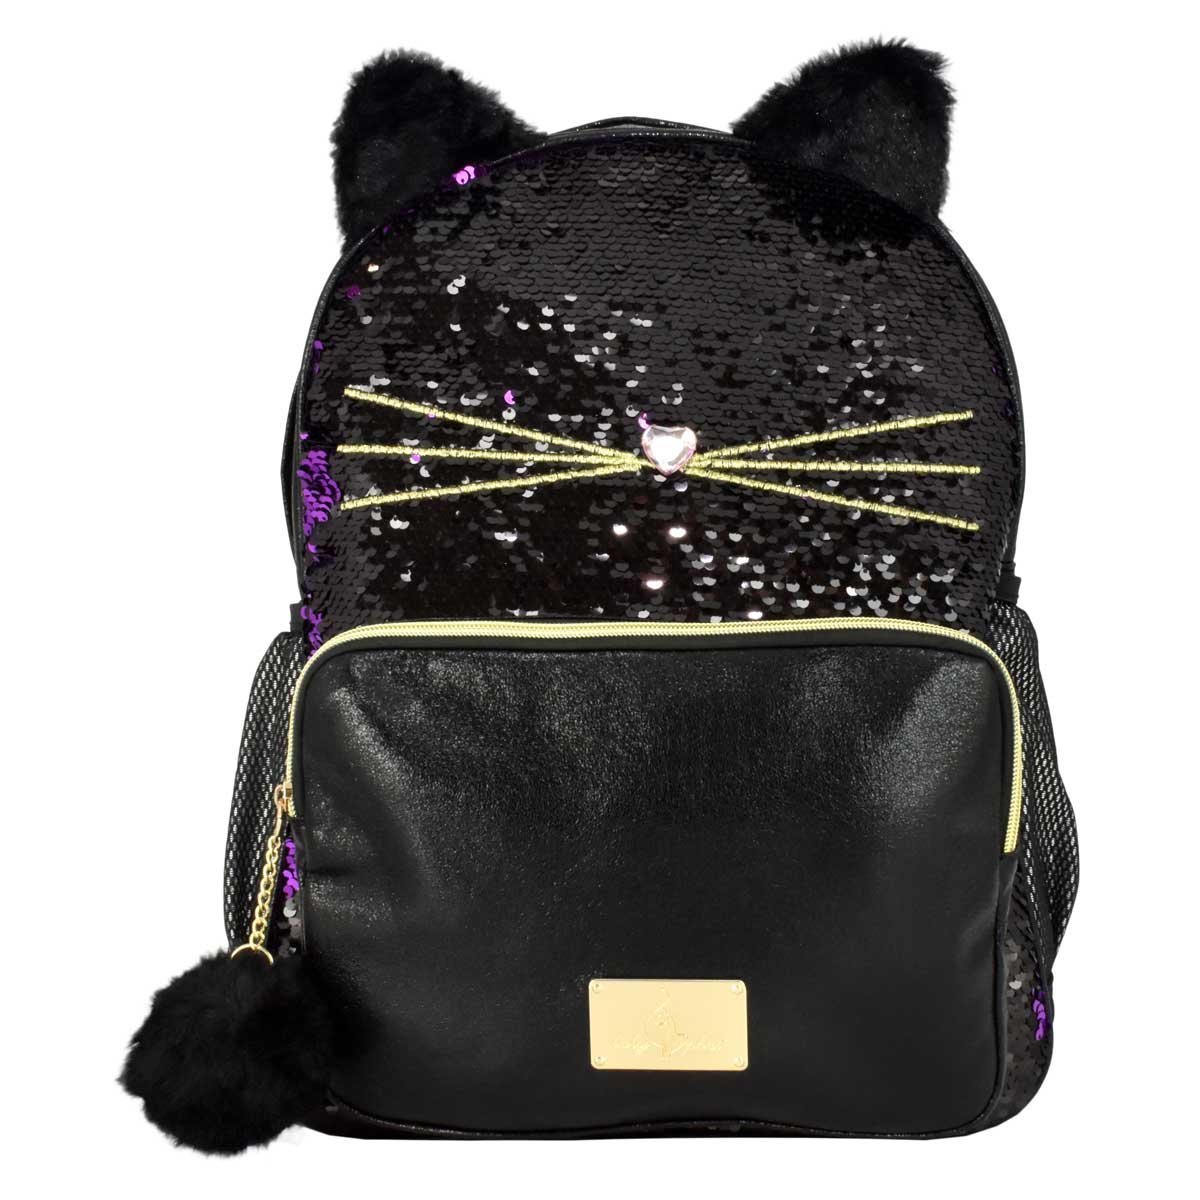 Backpack en Forma de Gato con Lentejuela Baby Phat